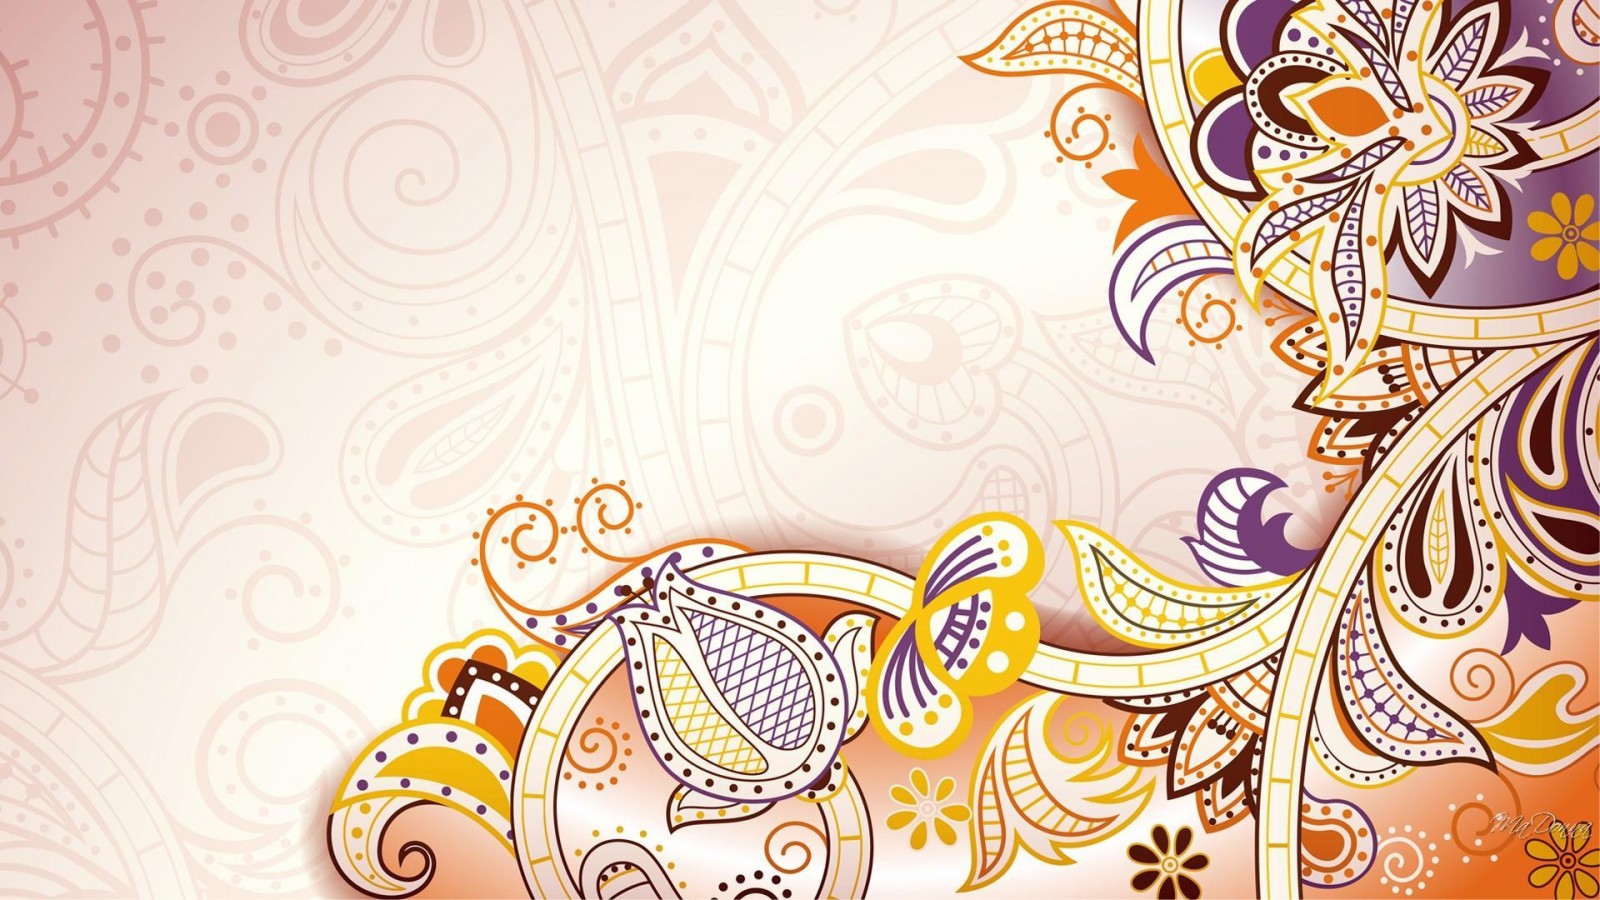 wallpaper batik,text,pattern,illustration,floral design,design